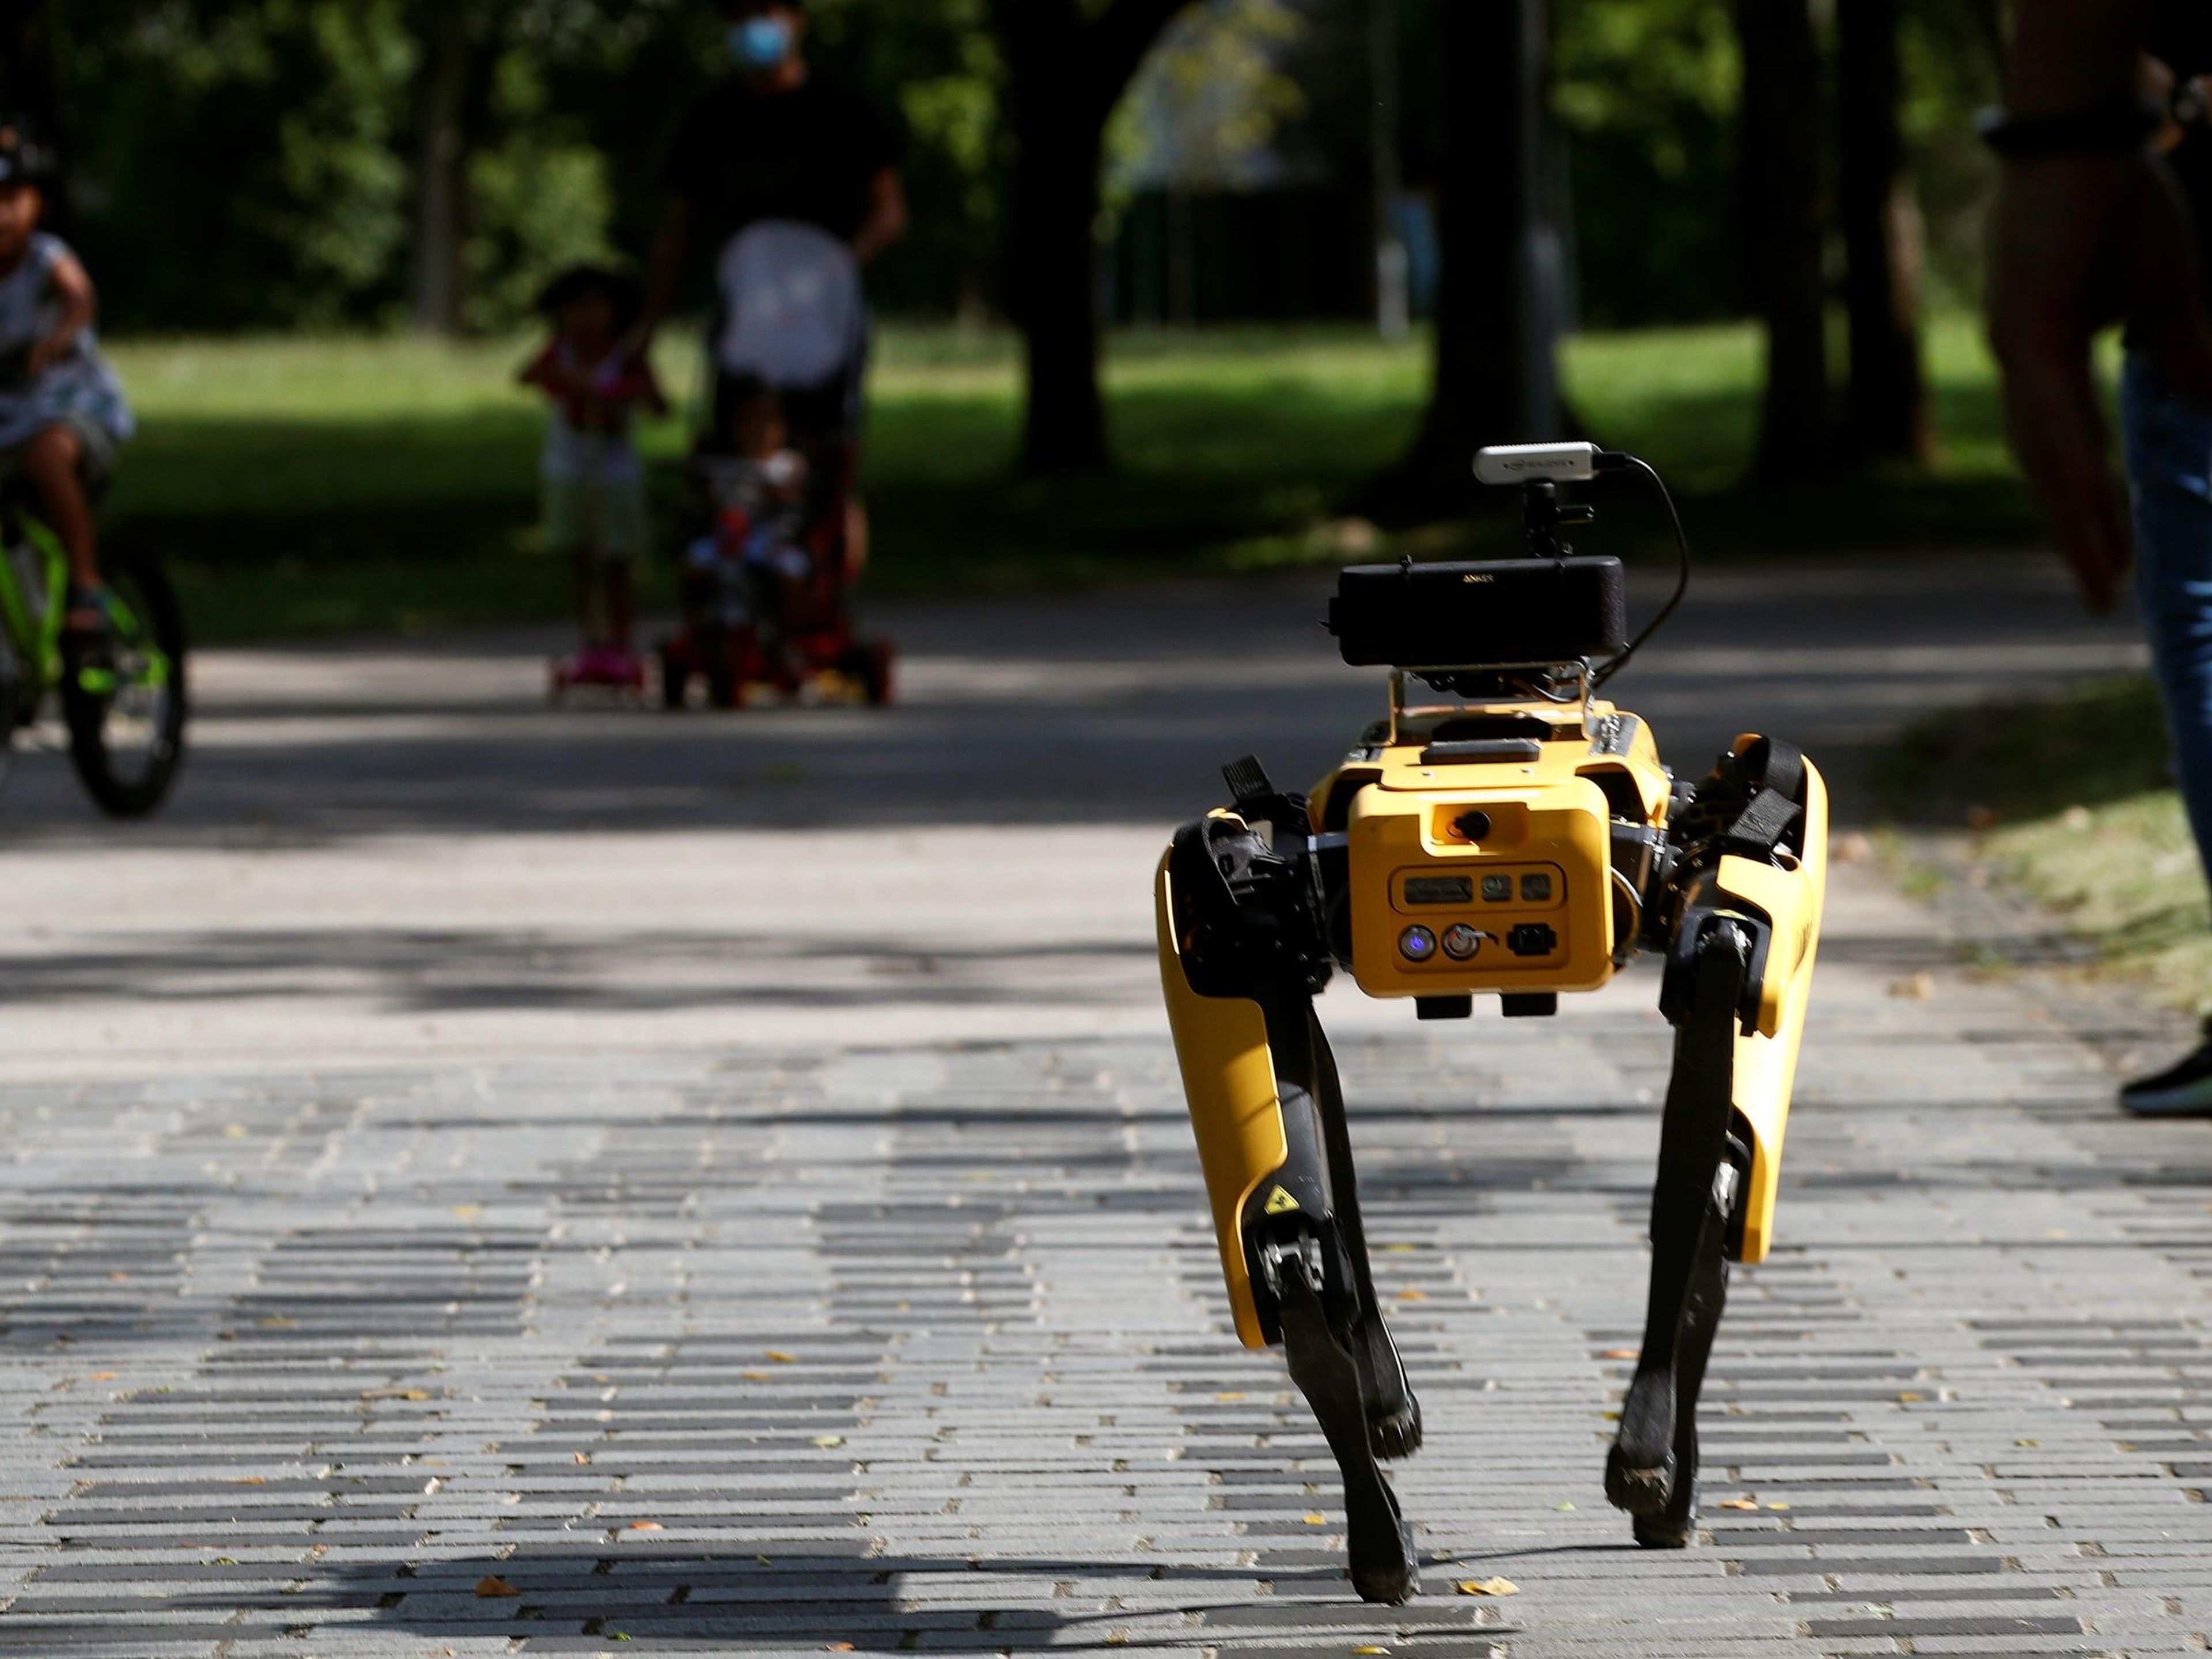 Boston Dynamics Spot robot.